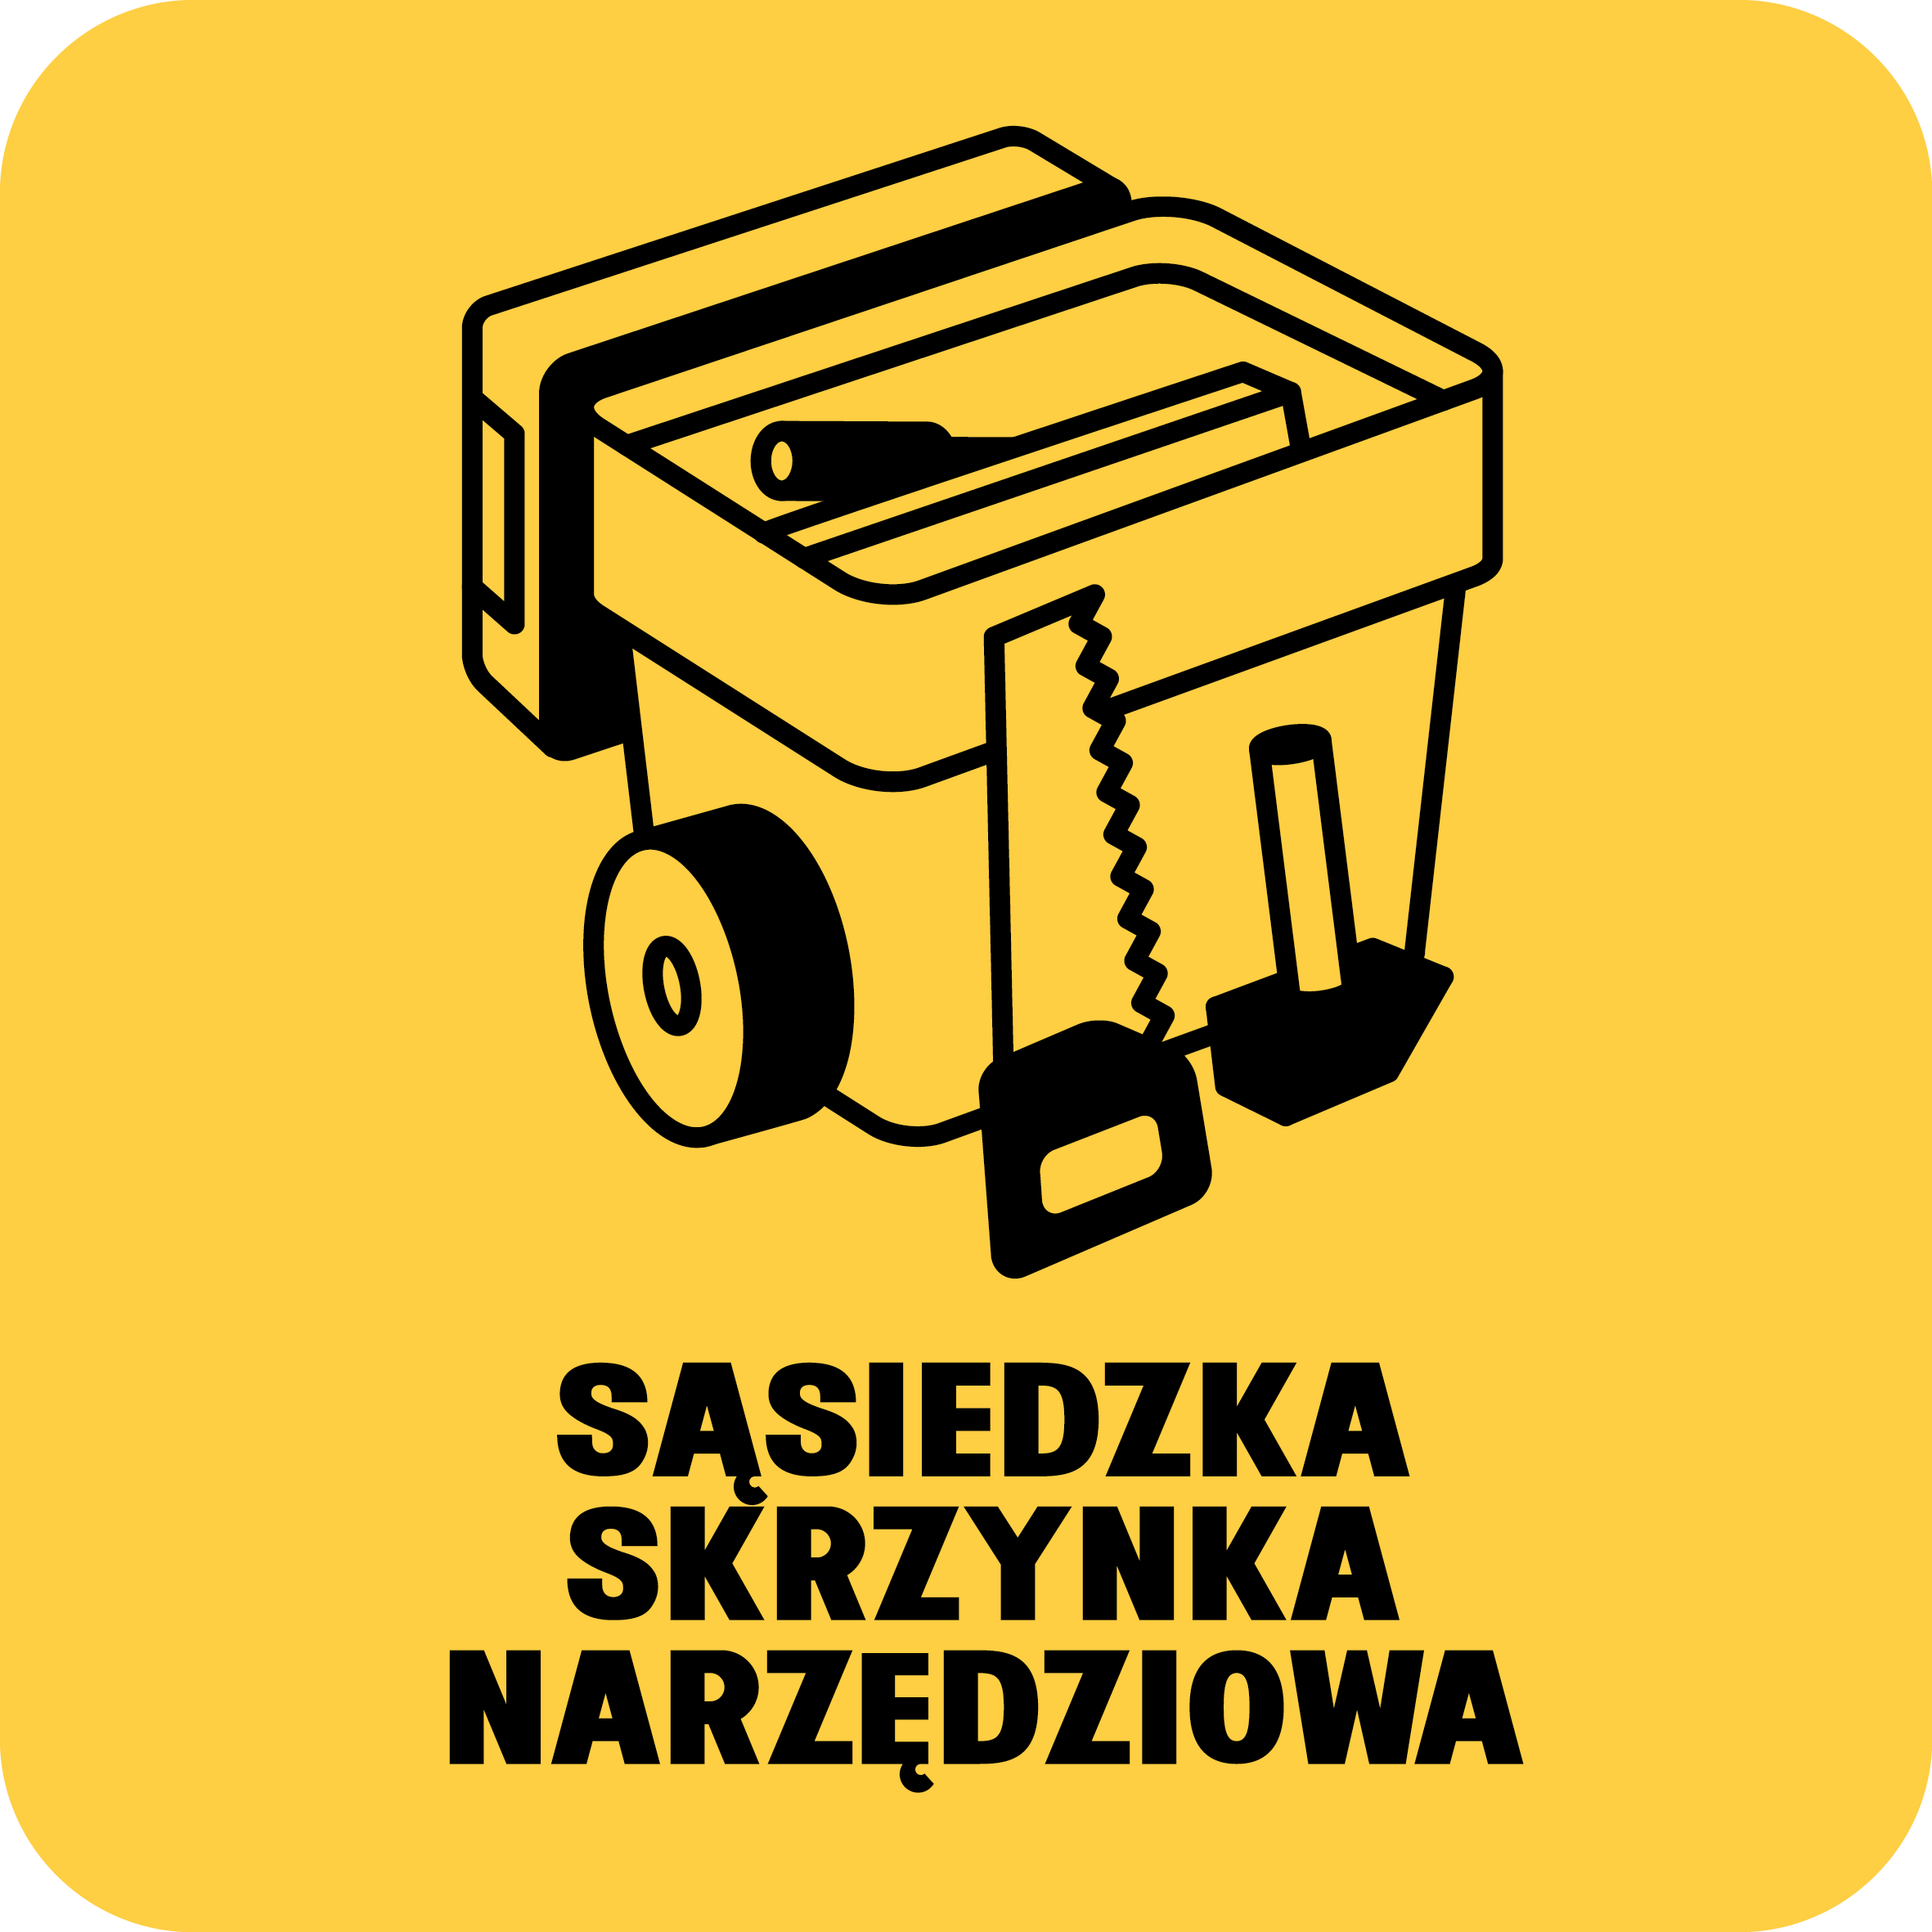 logotyp projektu przedstawiający skrzynkę z narzędziami z podpisem "sąsiedzka skrzynka narzędziowa"